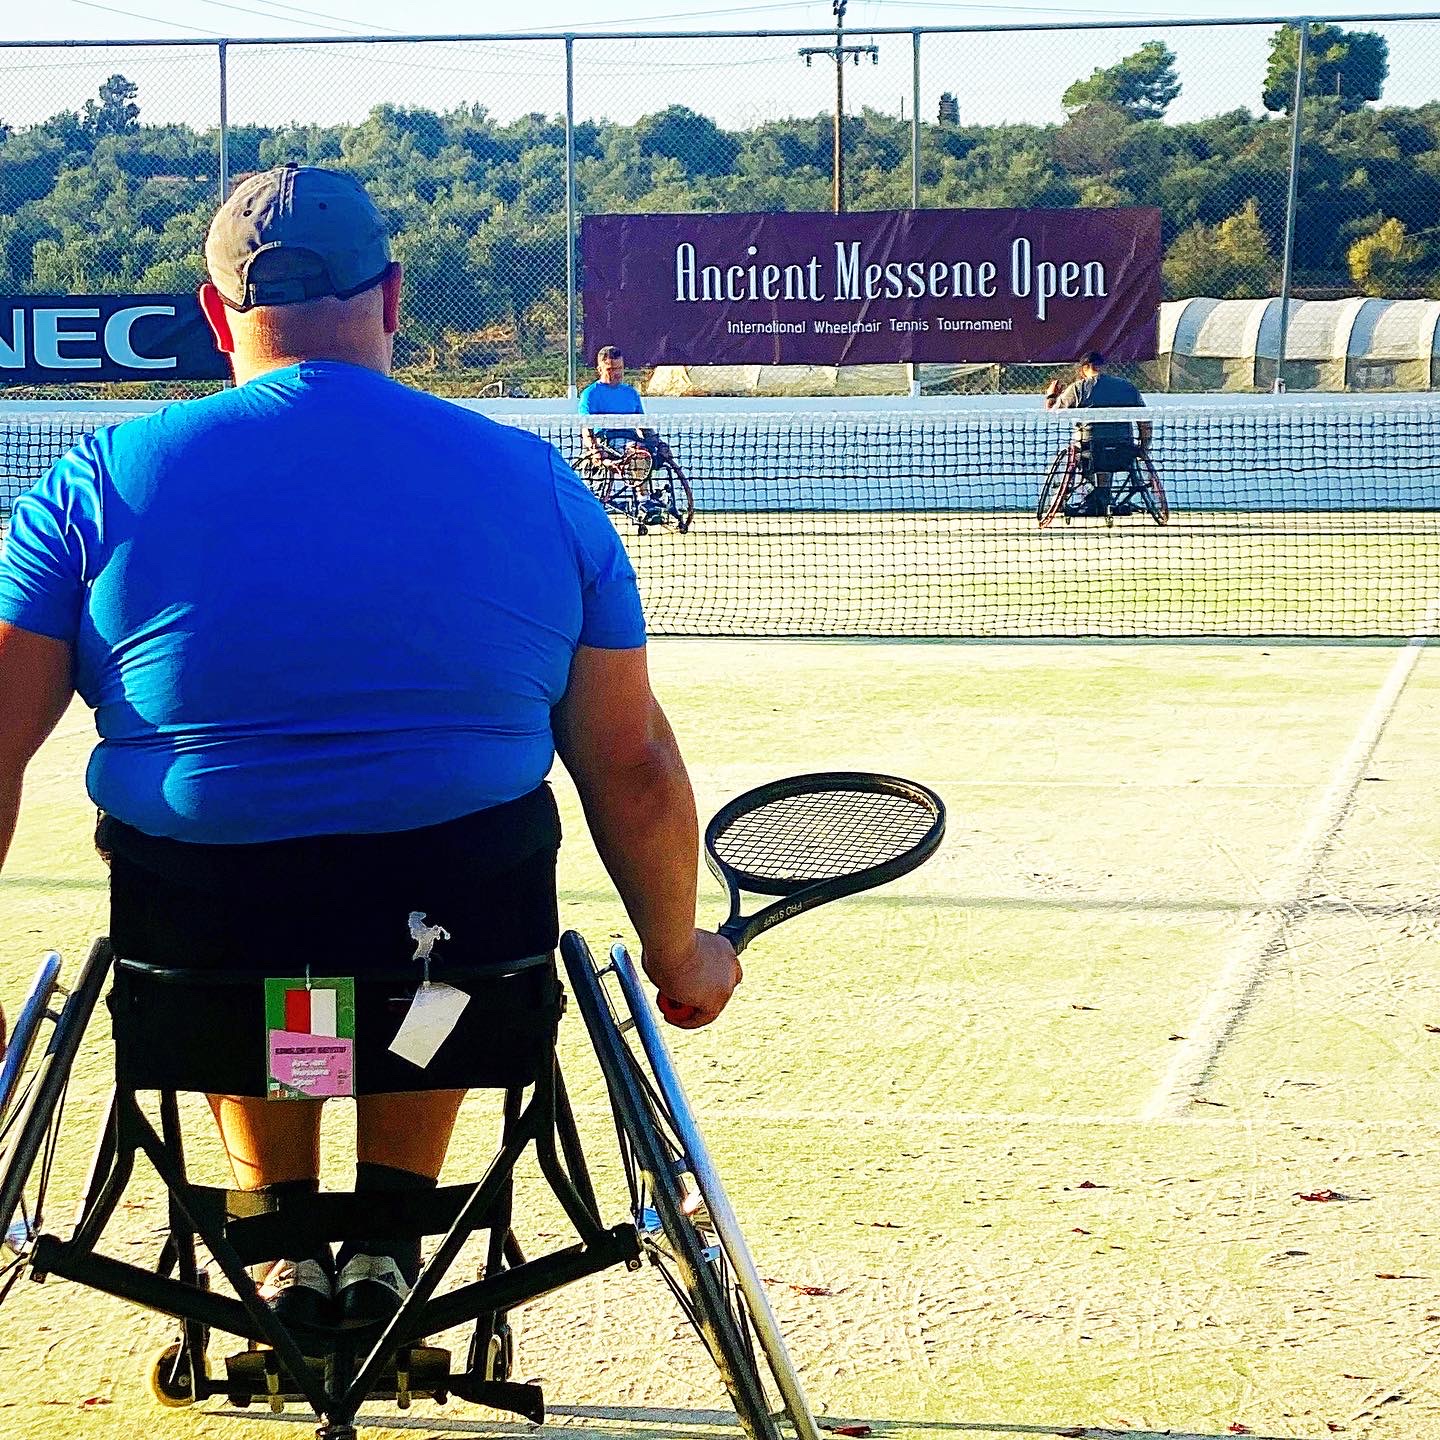 Τένις με αμαξίδιο: Ξεκινά σήμερα το 6ο “Ancient Messene Open” στην Μεσσηνία